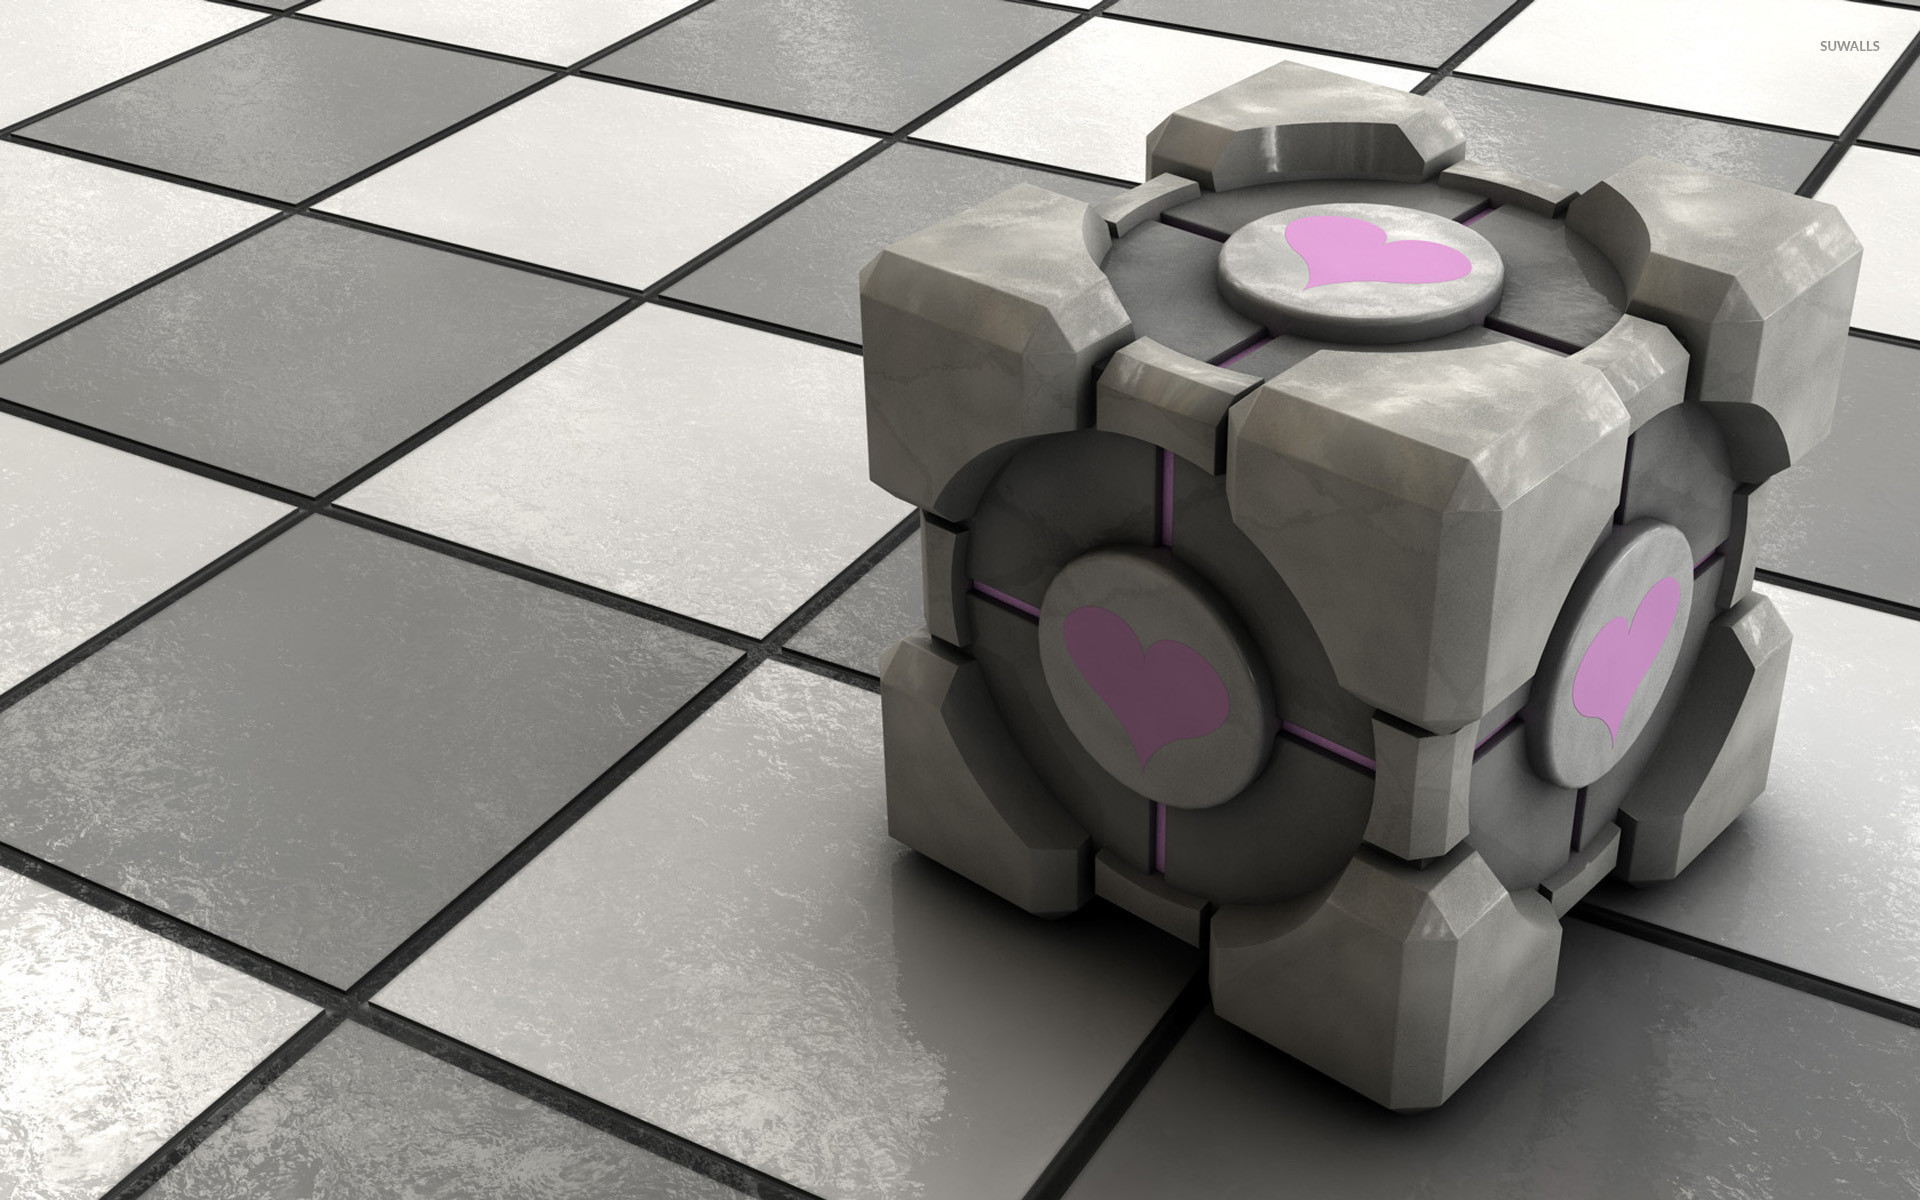 Portal cube. Portal 2 Cube Companion. Portal 1 куб компаньон. Portal 2 куб. Куб компаньон из Portal 2.